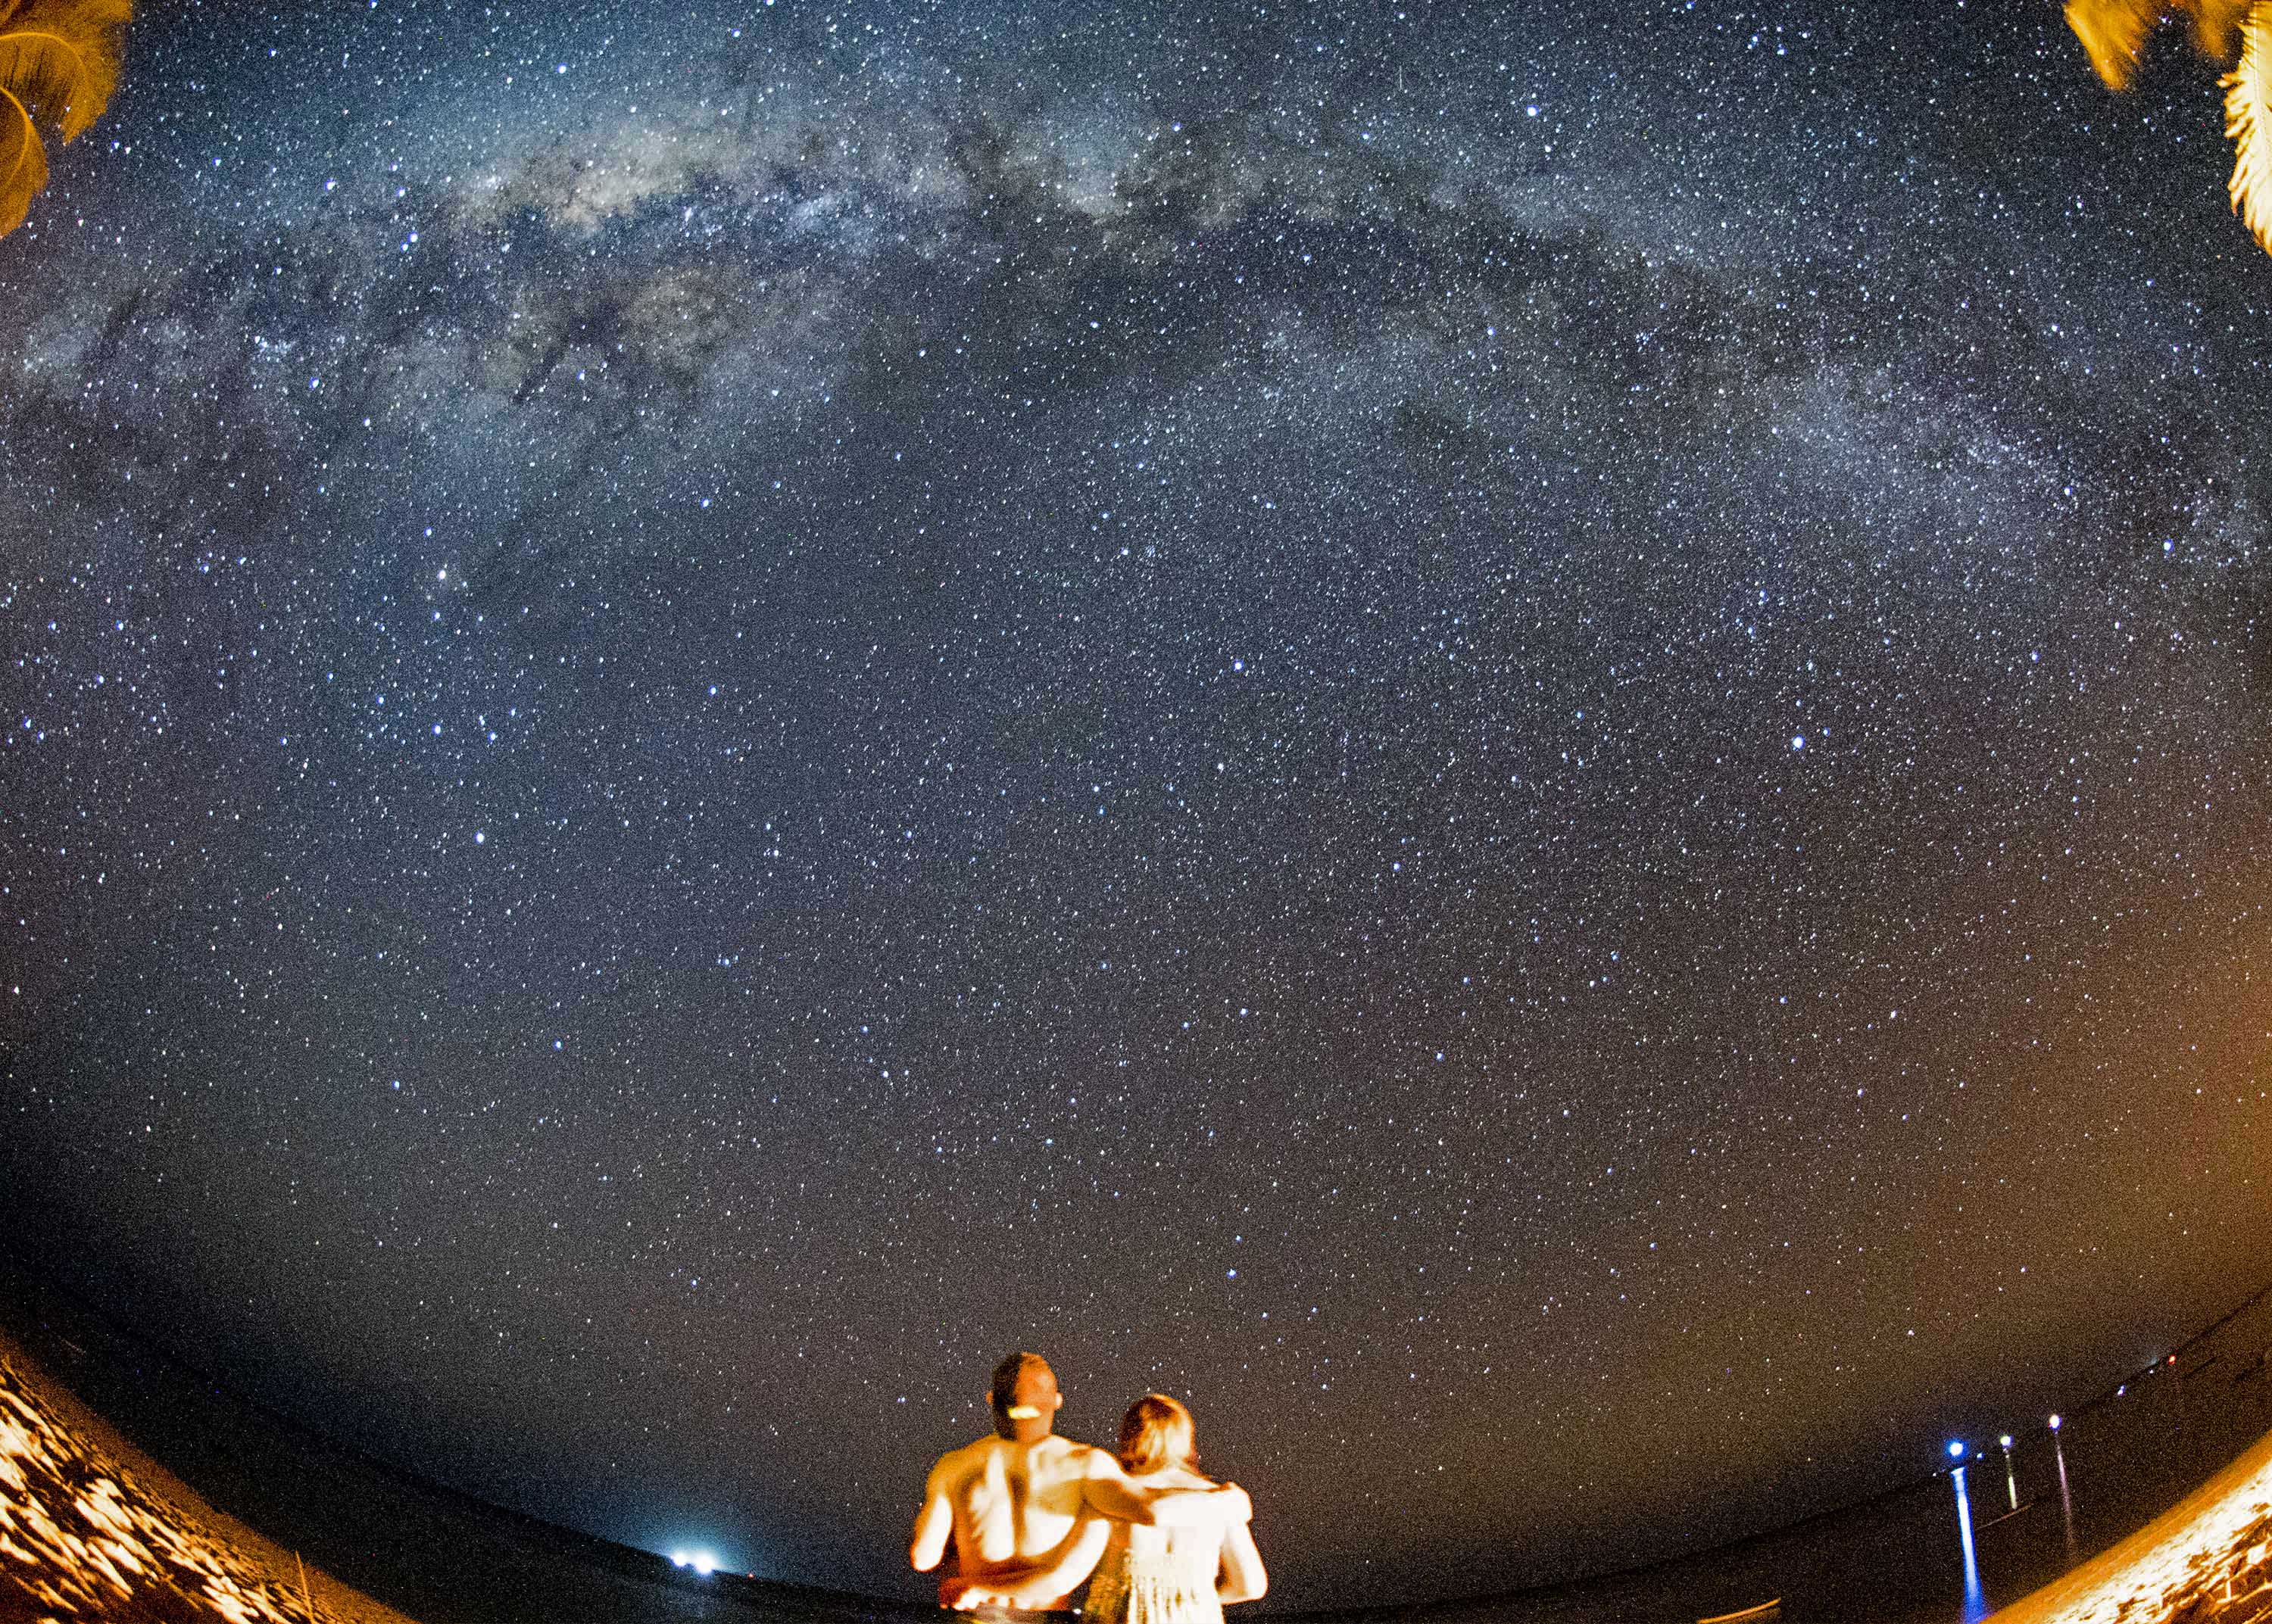 Wisatawan asing menikmati pemandangan gugusan Bima Sakti atau Milky Way yang terlihat membujur di selatan pulau Rote Ndao, Nusa Tenggara Timur, Minggu (16/8). ANTARA FOTO/M Agung Rajasa.